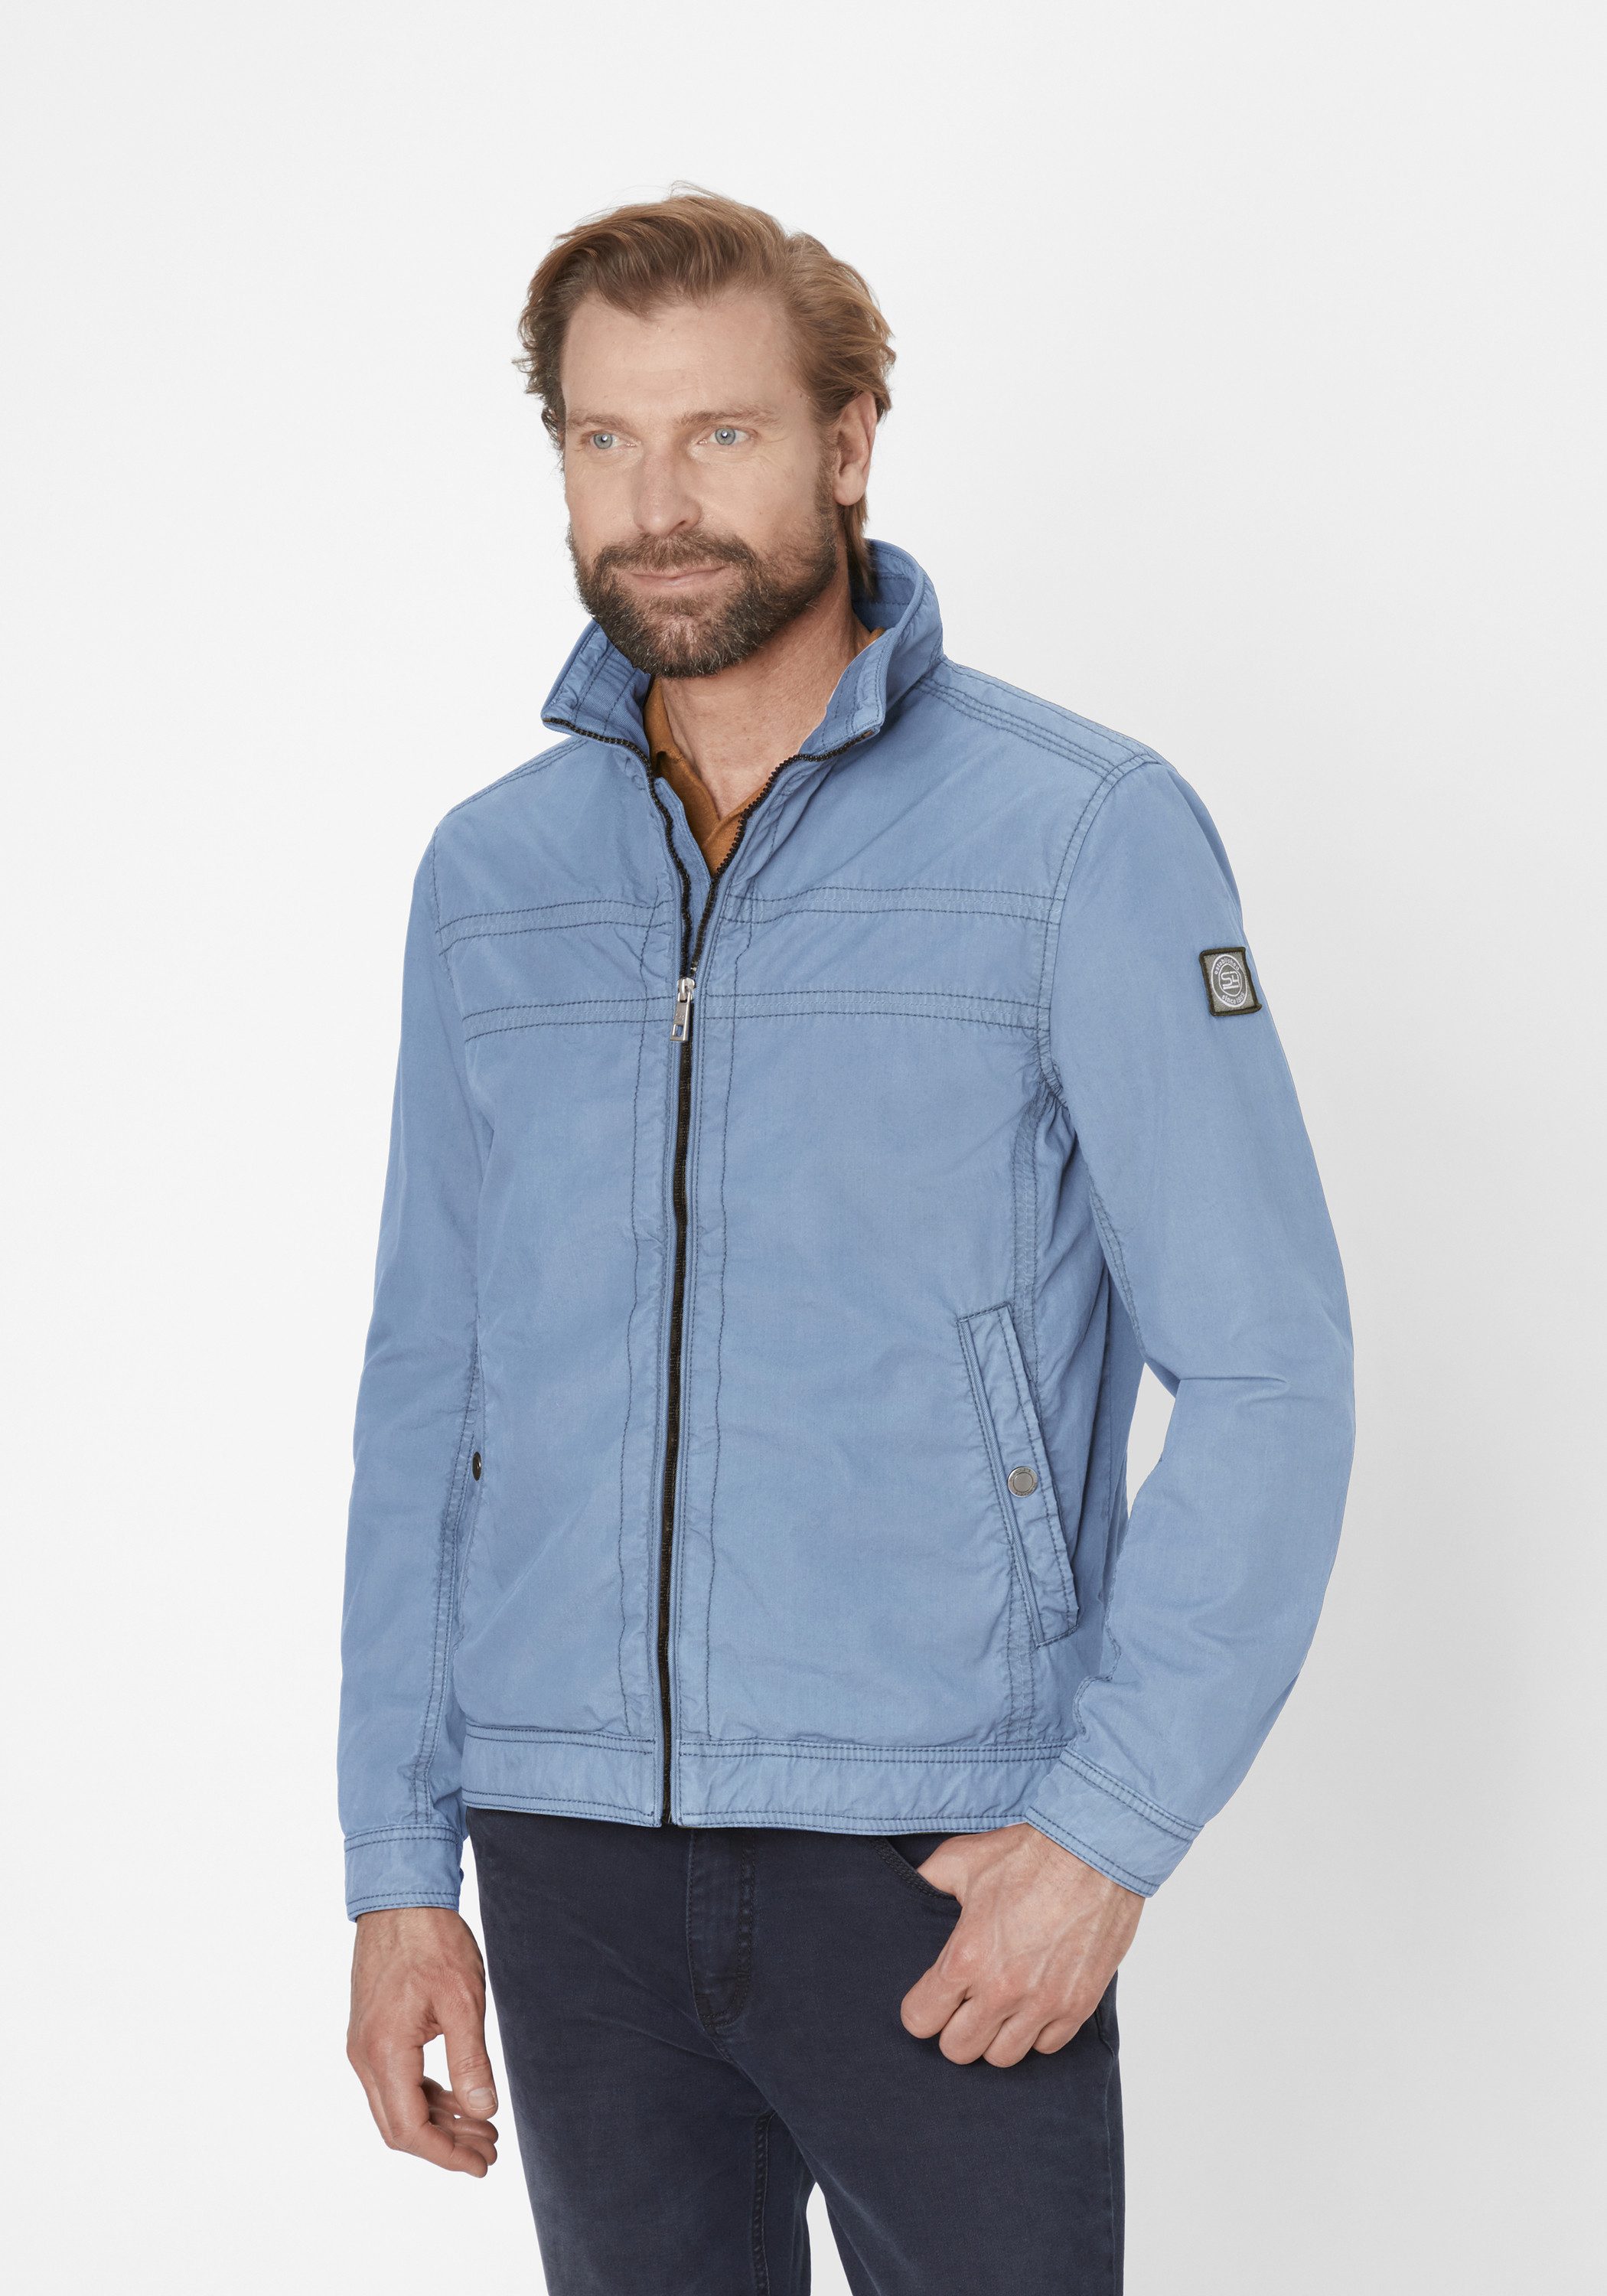 S4 Jackets Blouson MIAMI UP leichte Modern Fit Jacke aus reiner Baumwolle